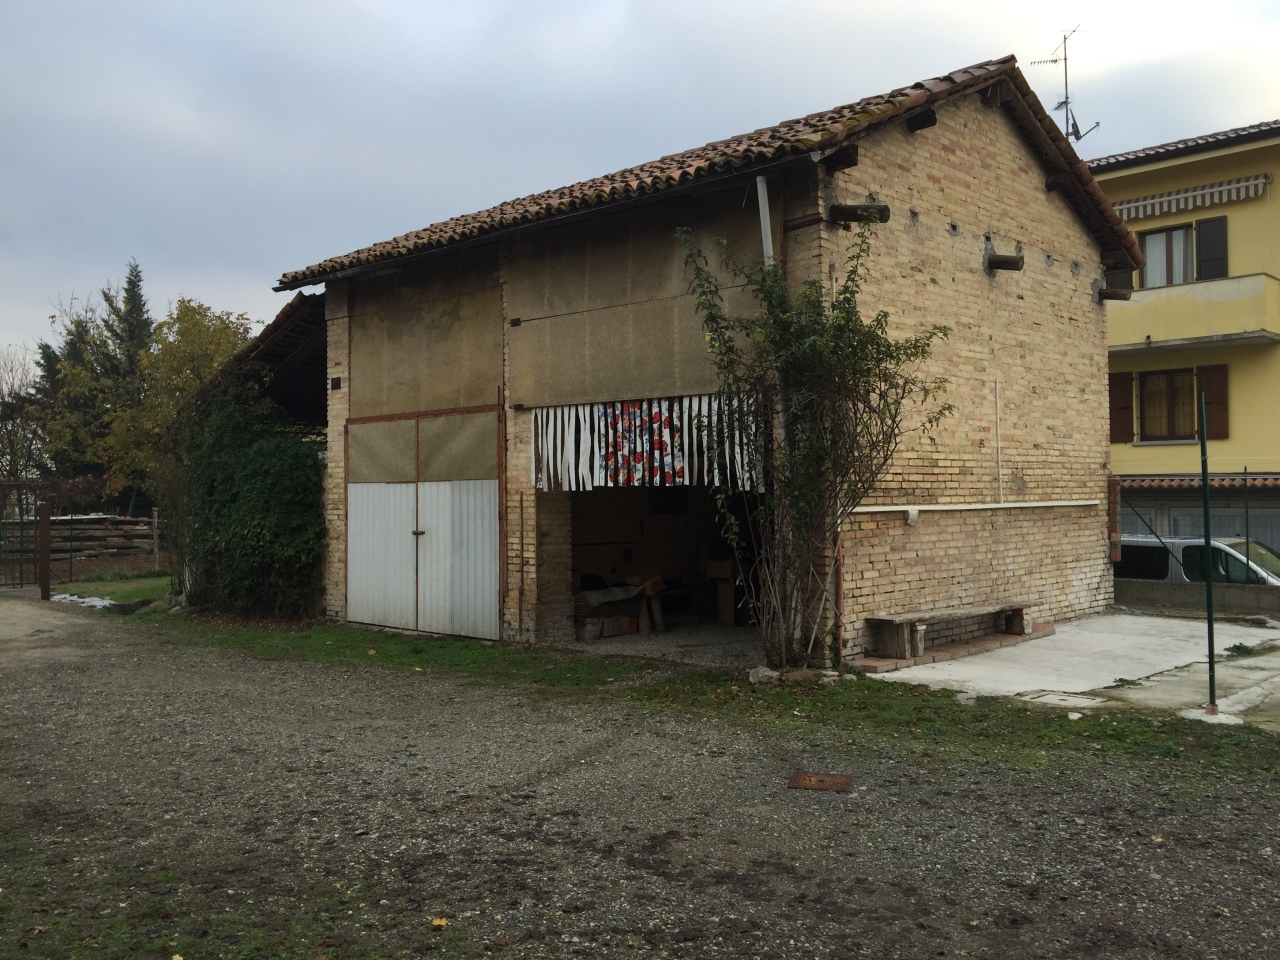 Rustico / Casale in vendita a Traversetolo, 3 locali, prezzo € 61.000 | PortaleAgenzieImmobiliari.it